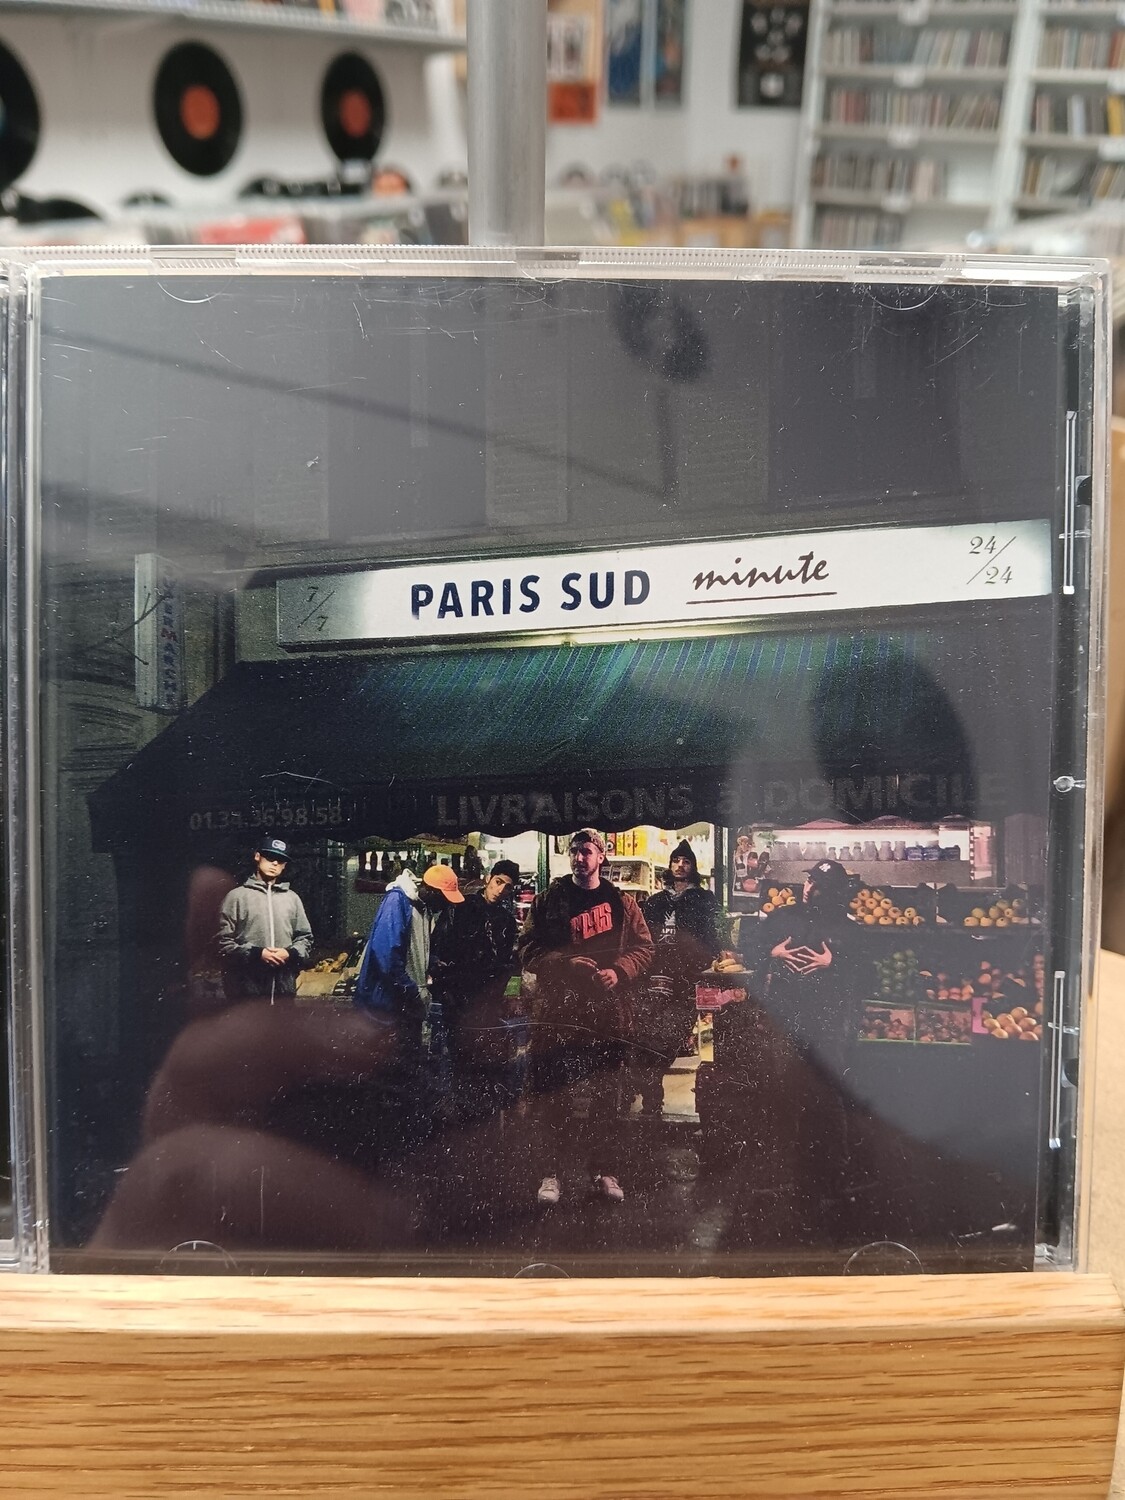 1995 - Paris Sud Minute (CD)